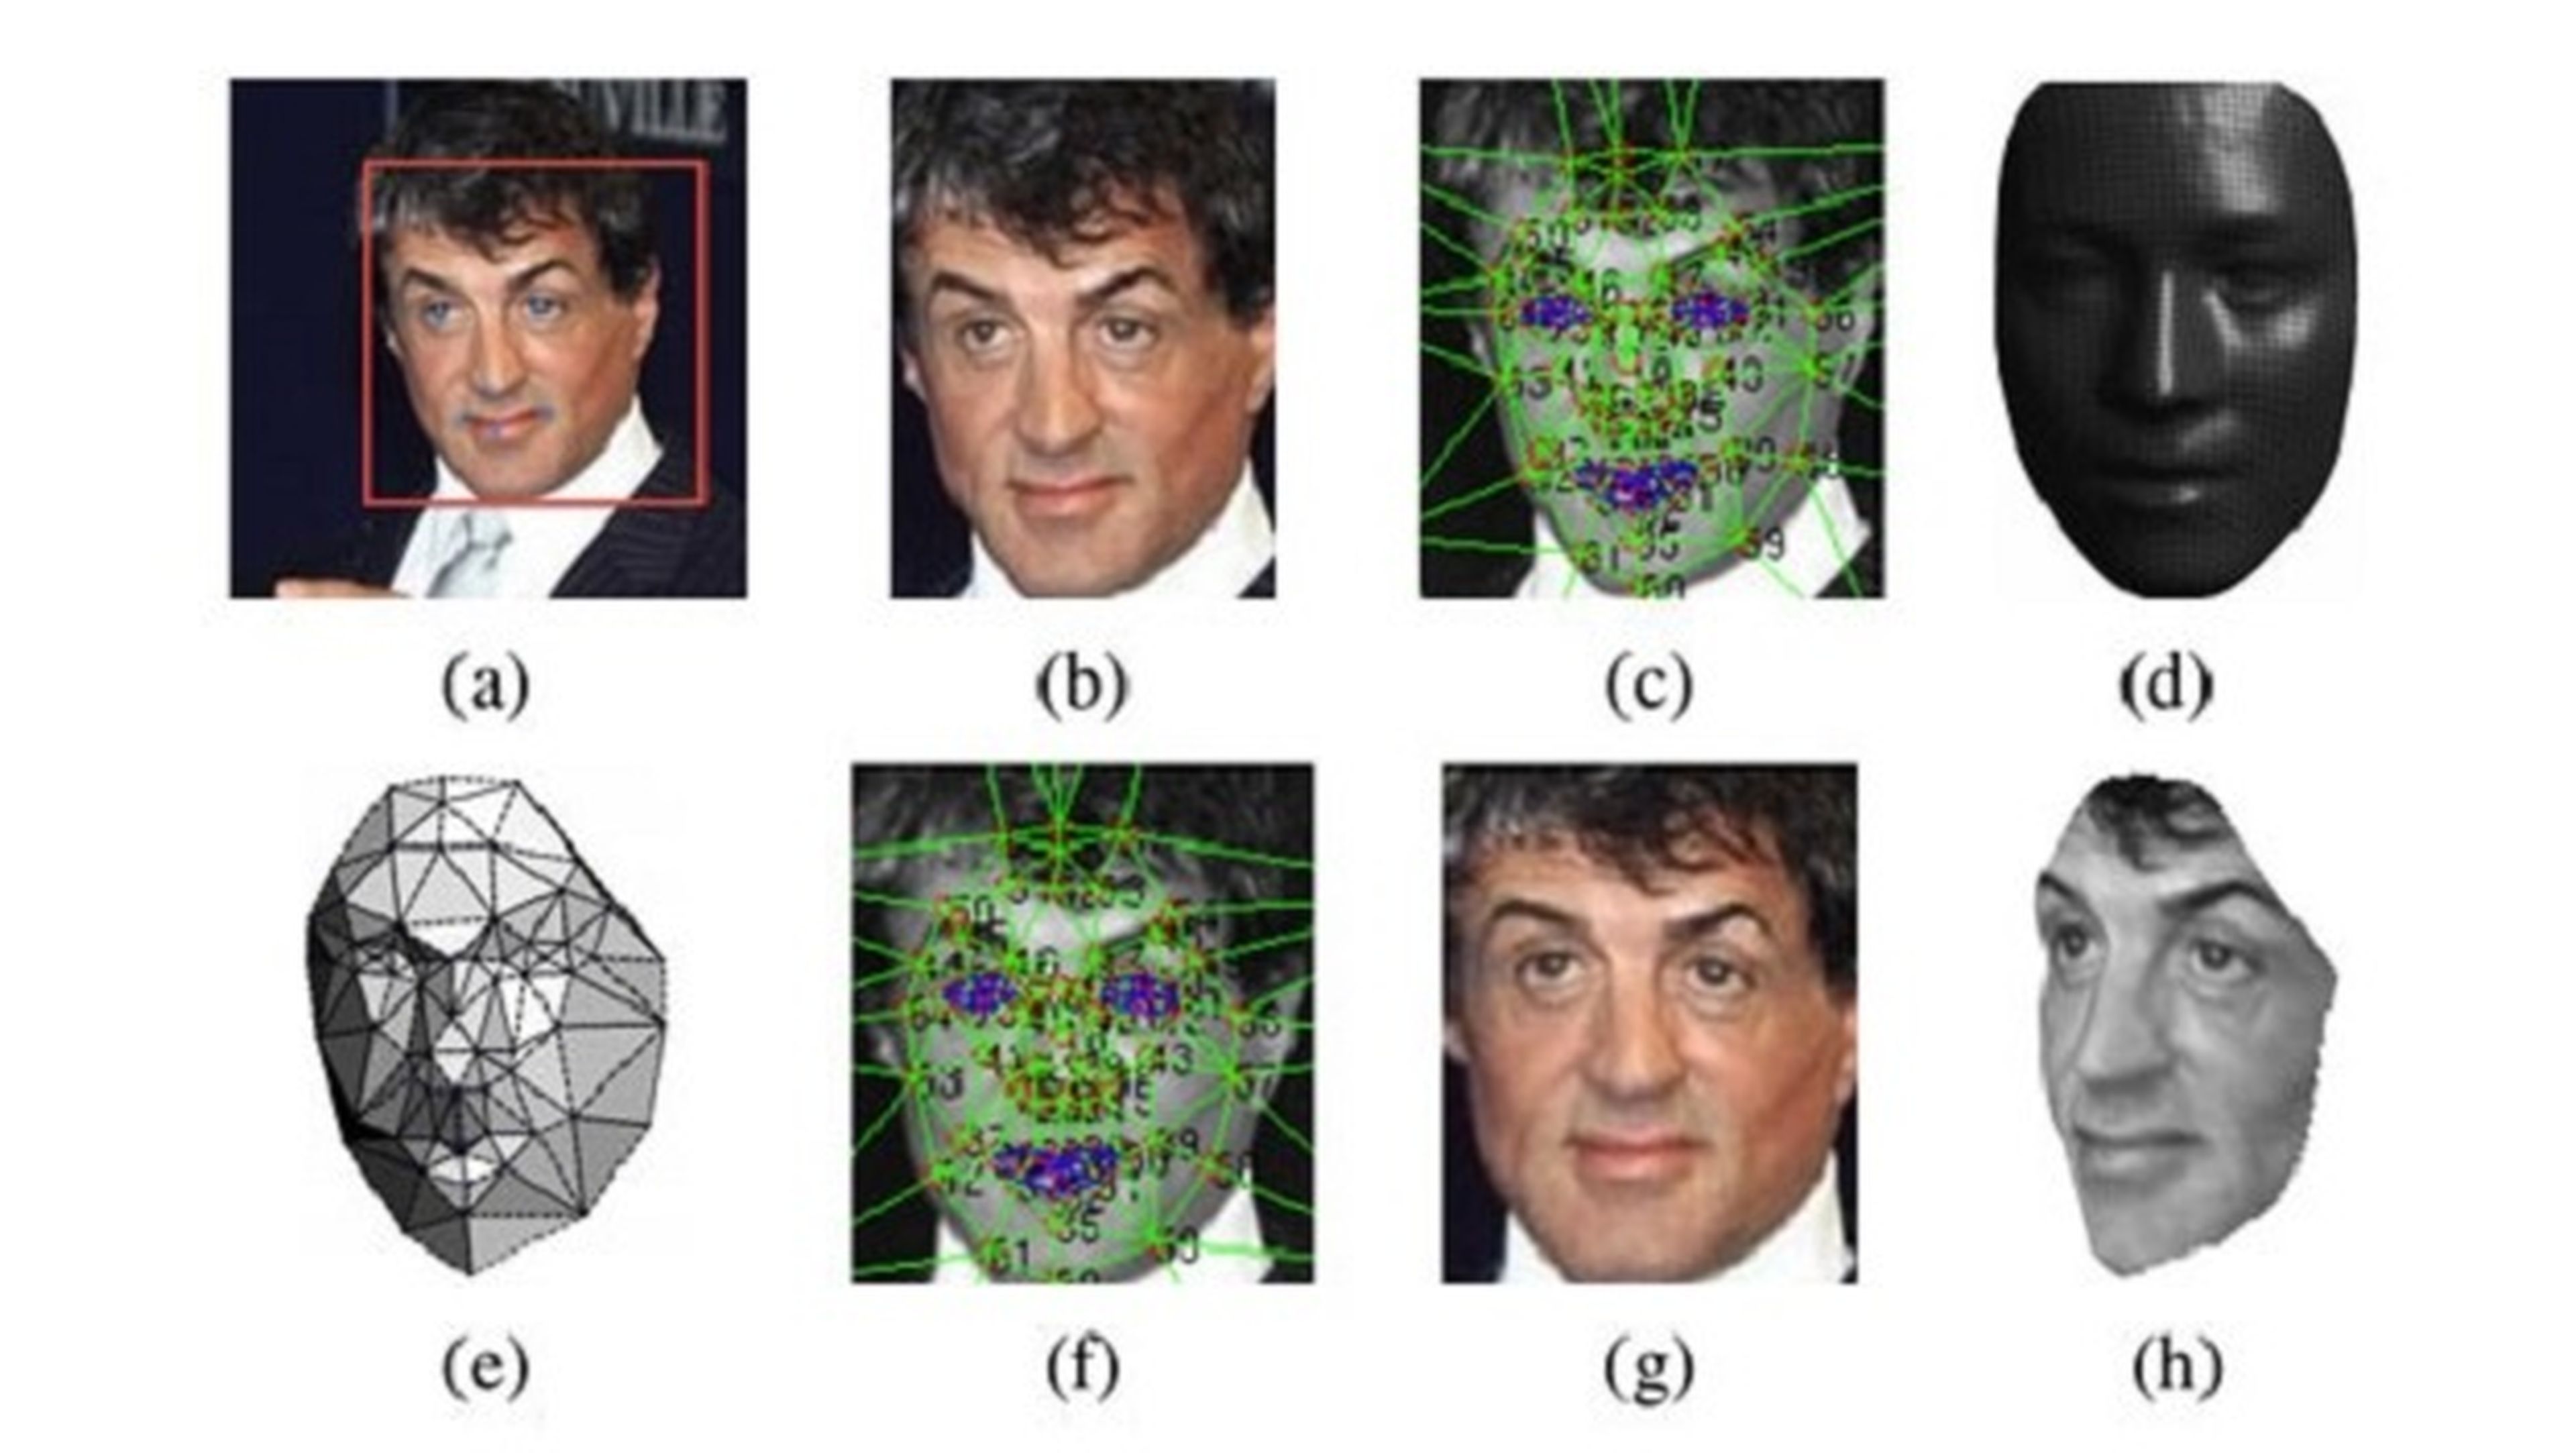 Software inteligencia artificial verificación facial Facebook